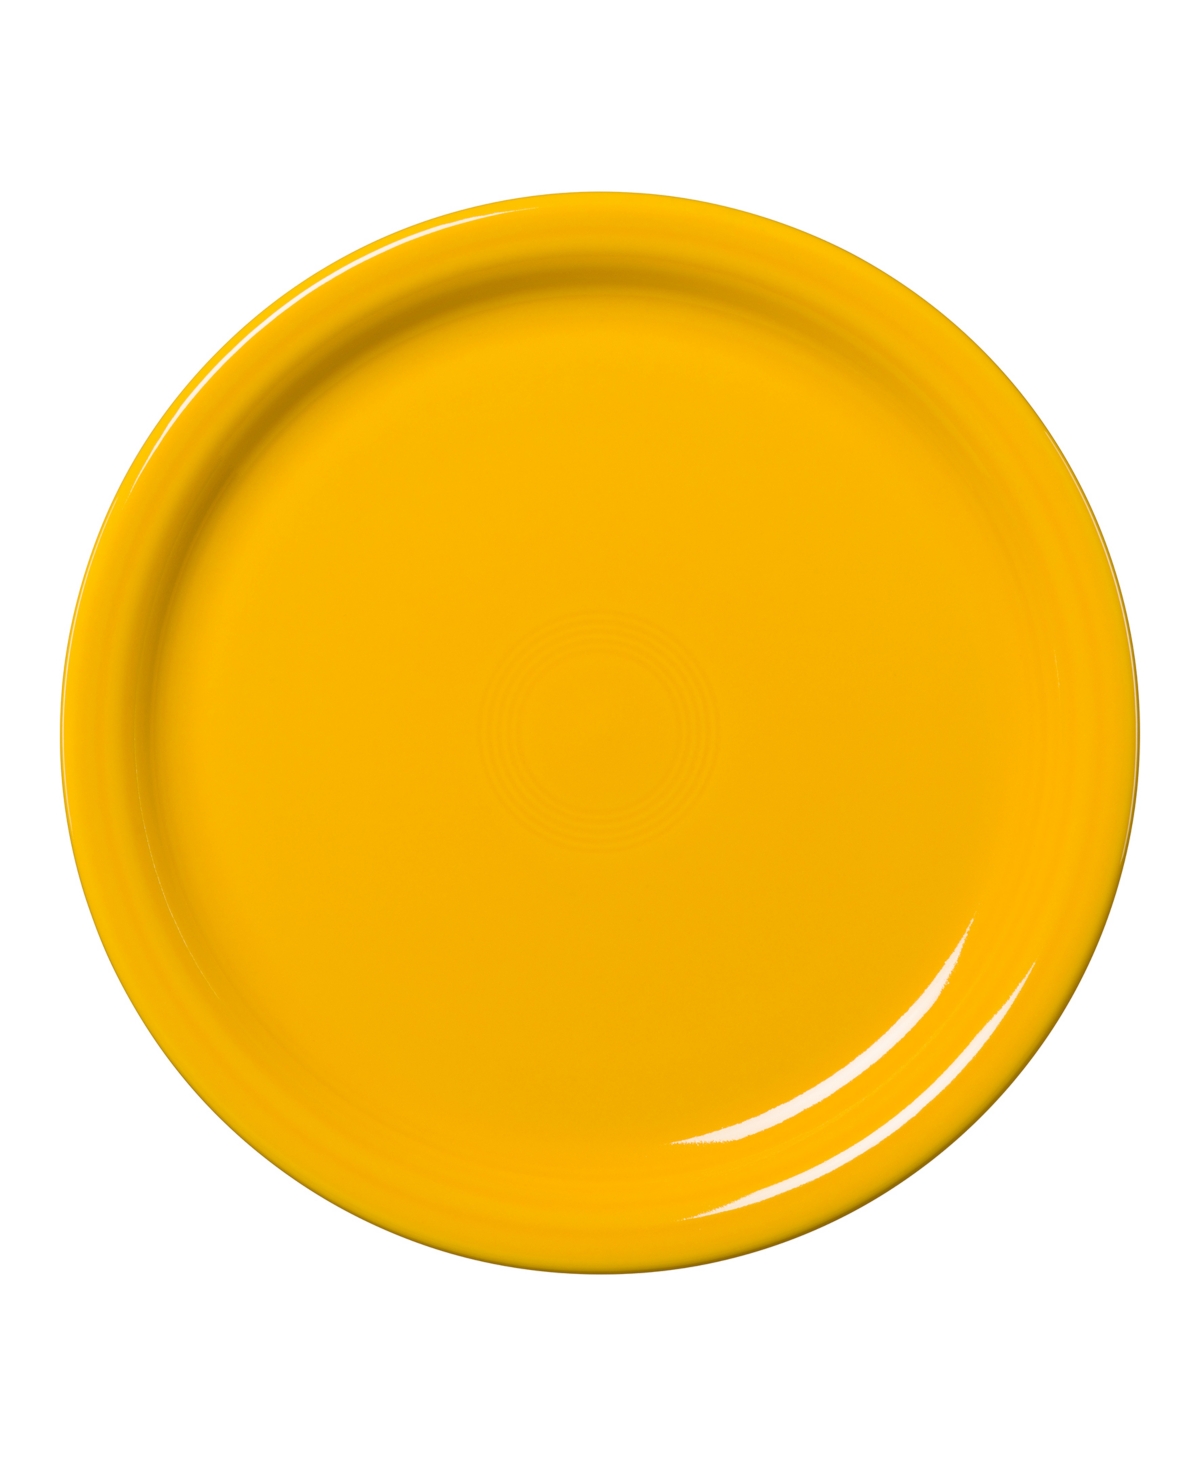 Bistro 9" Luncheon Plate - Jade